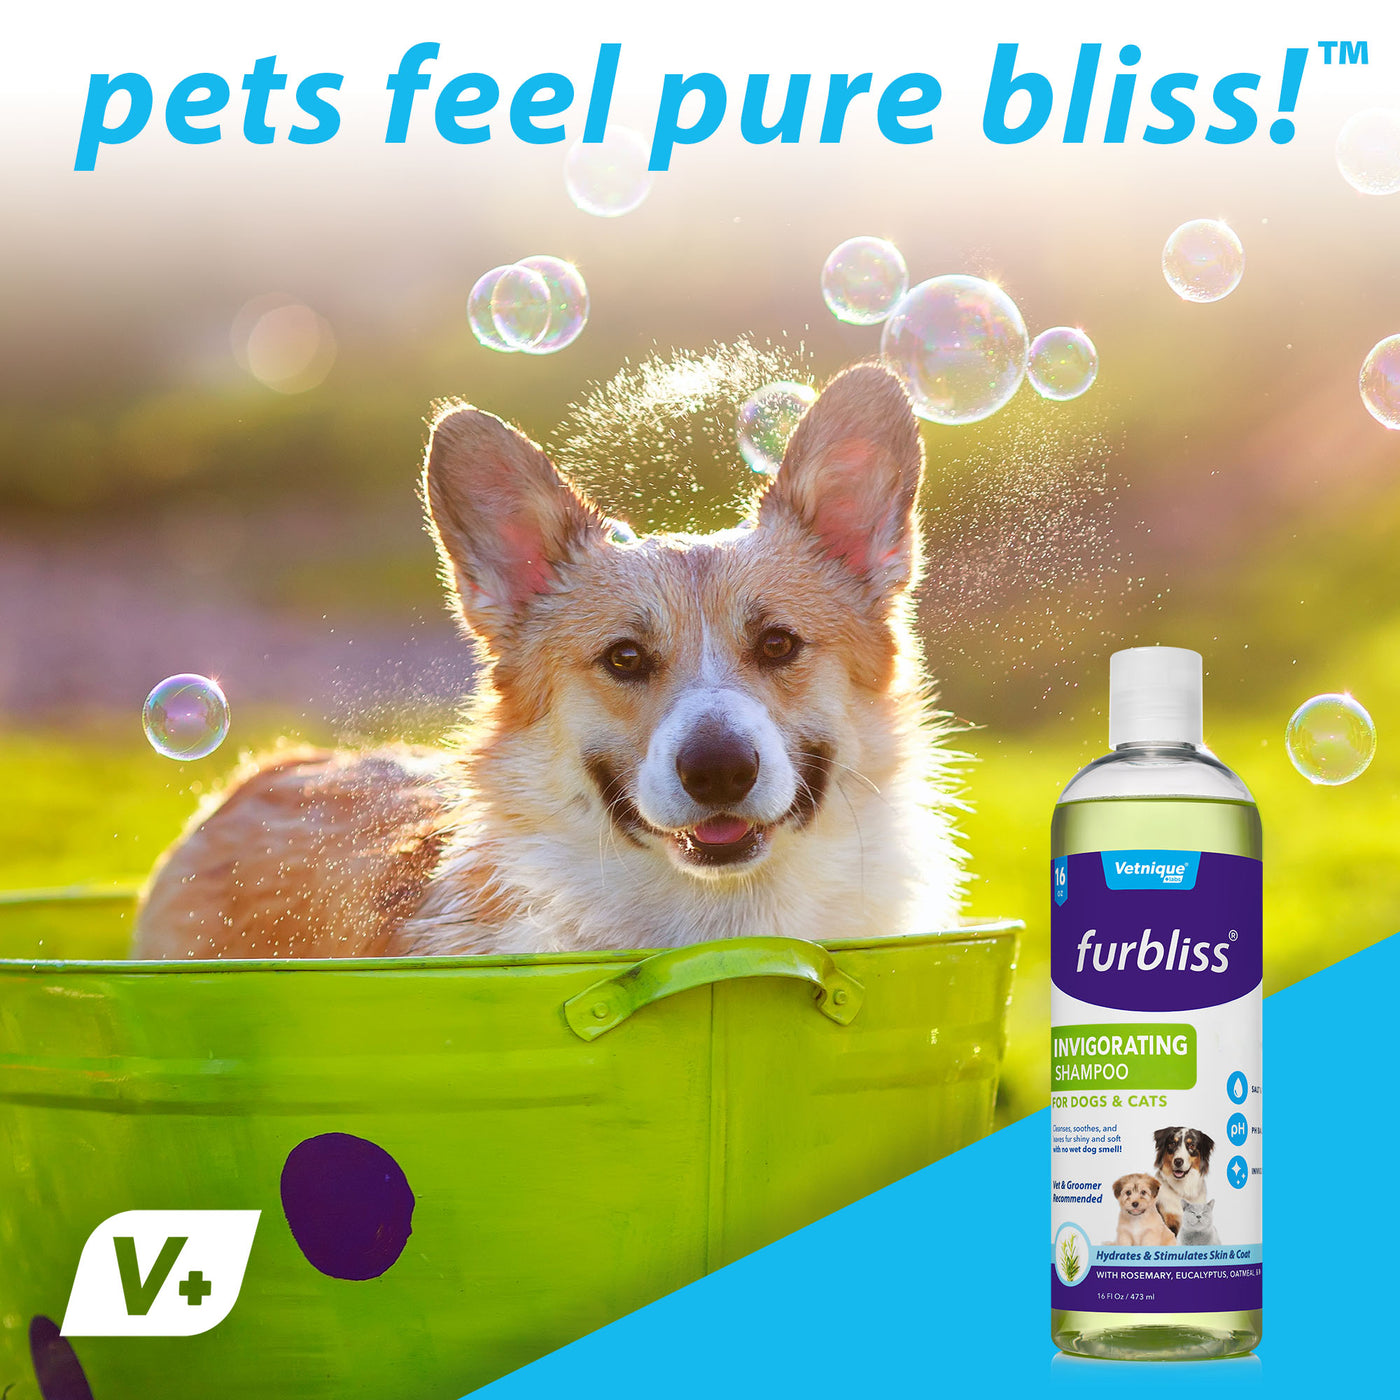 Furbliss® Invigorating Dog & Cat Shampoo - 16 oz